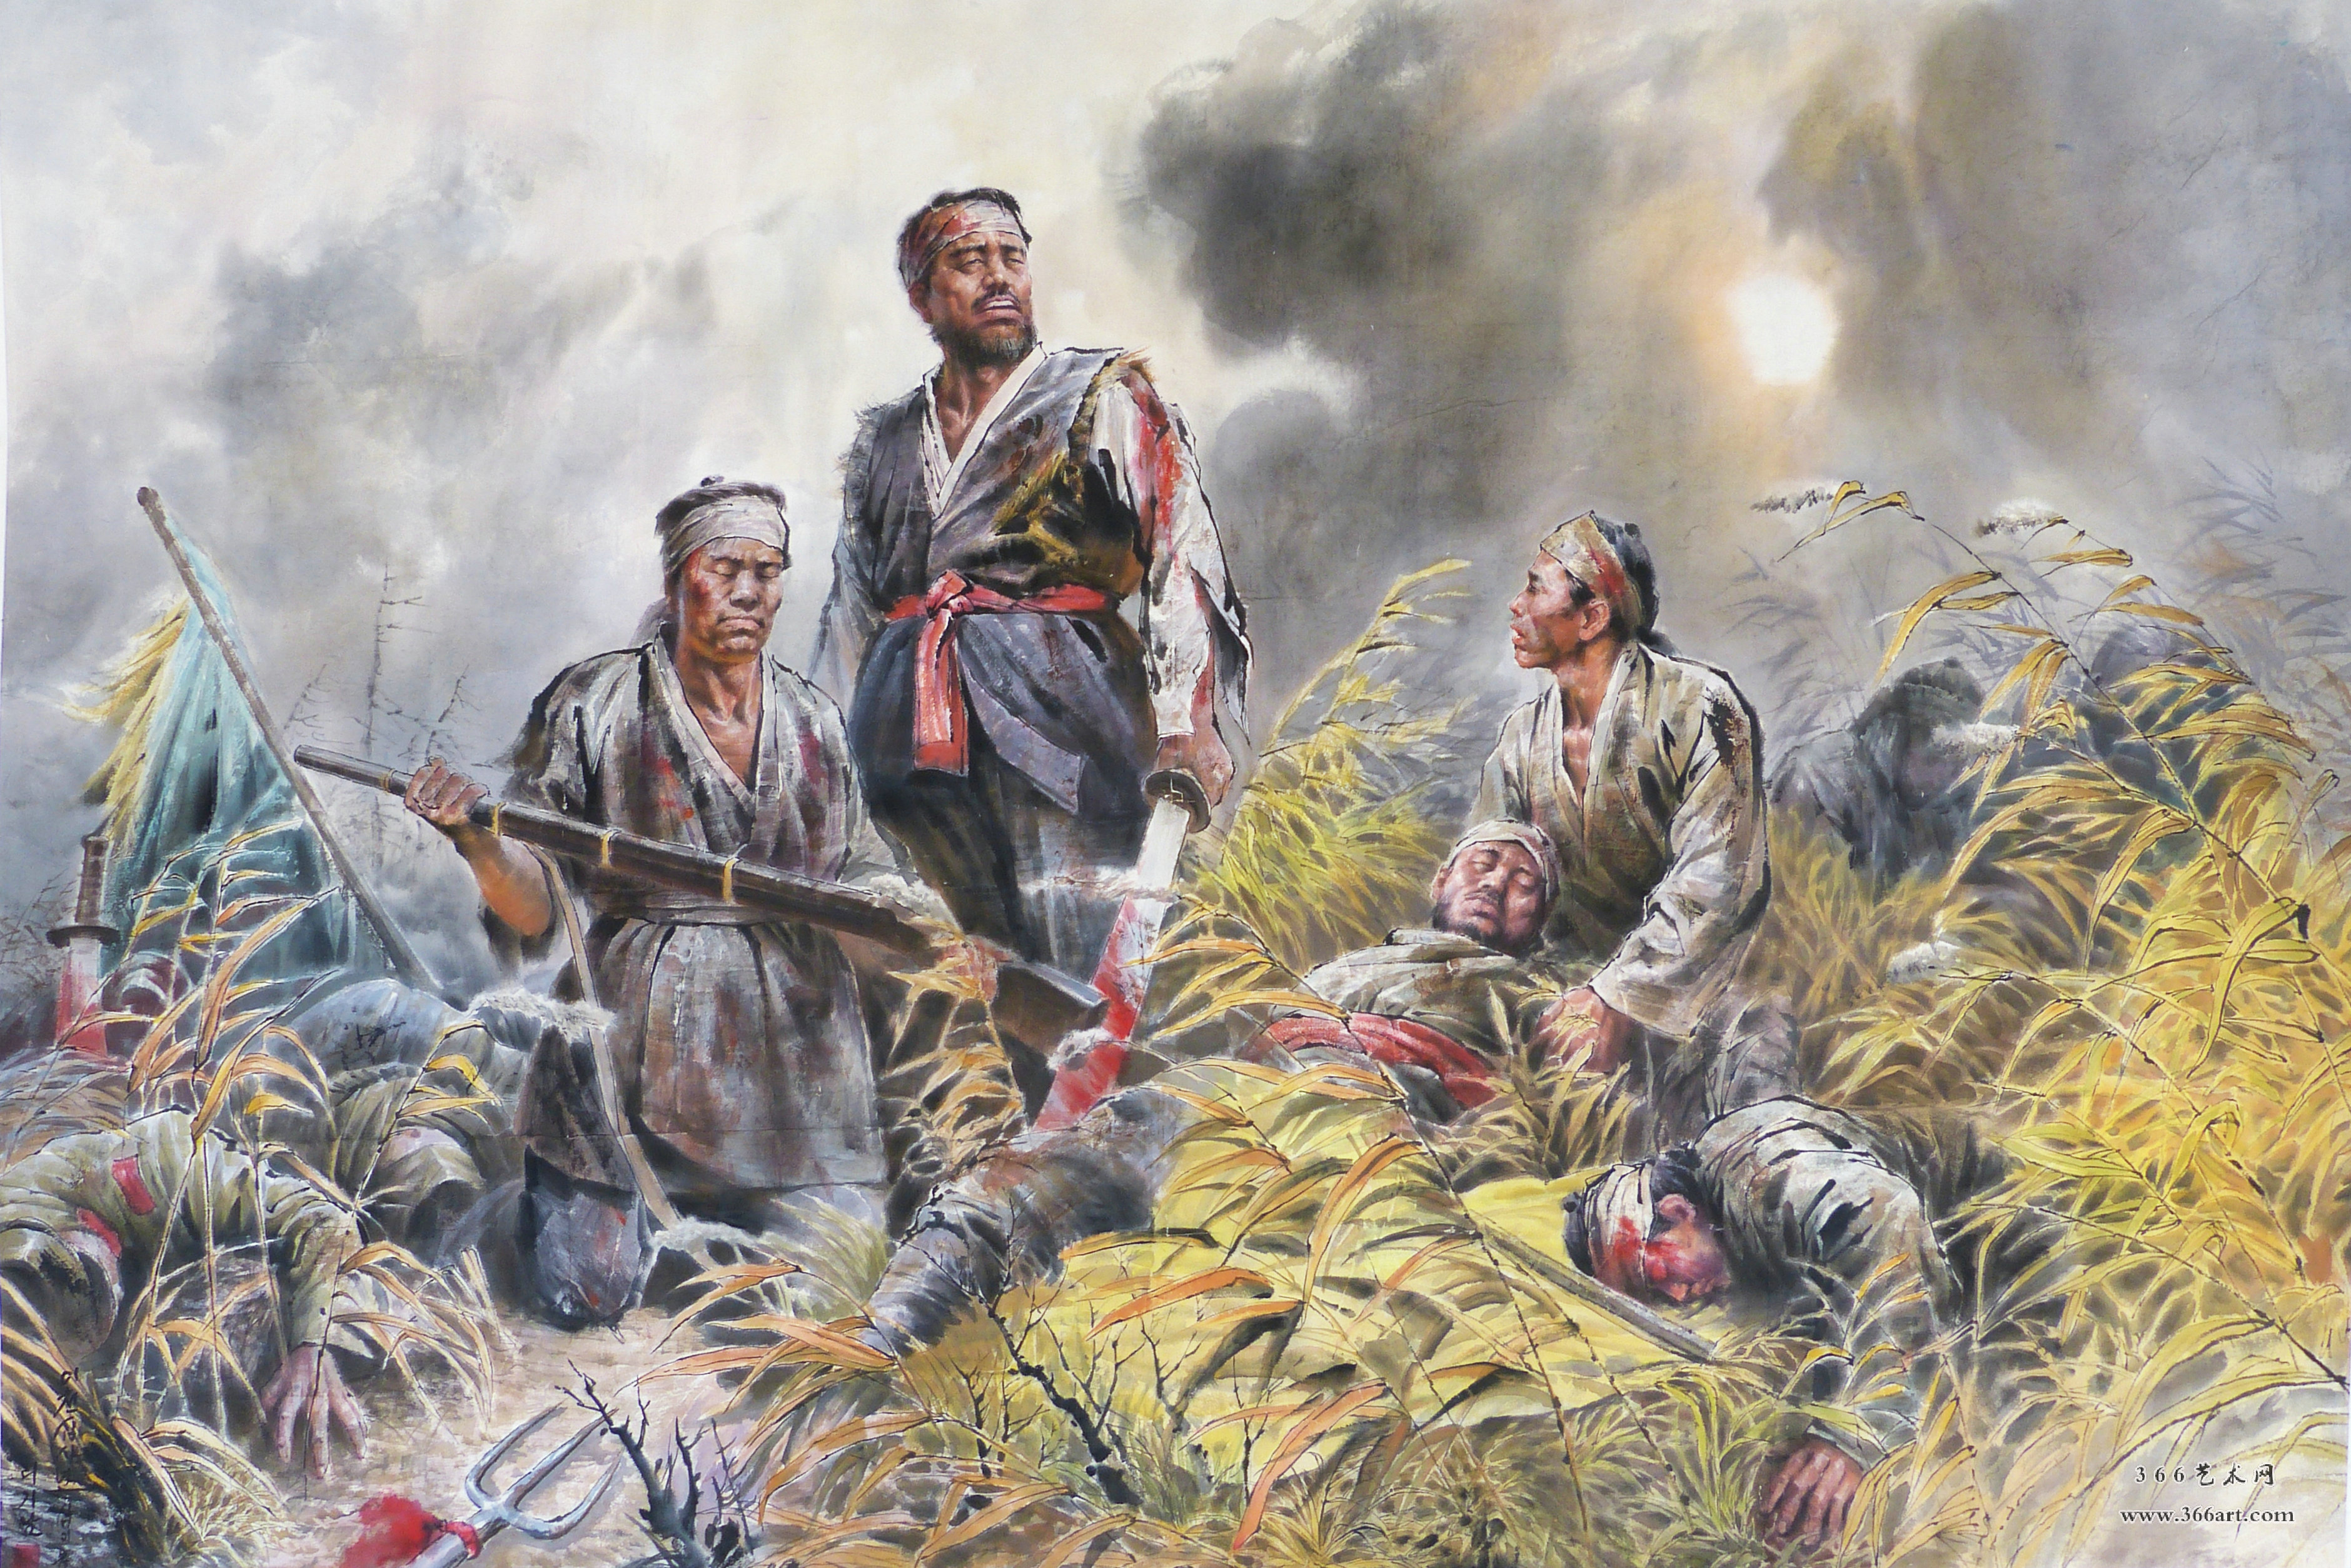 【朝鲜画】李吉男 最后的胜利 2014年11月 241 x 161cm